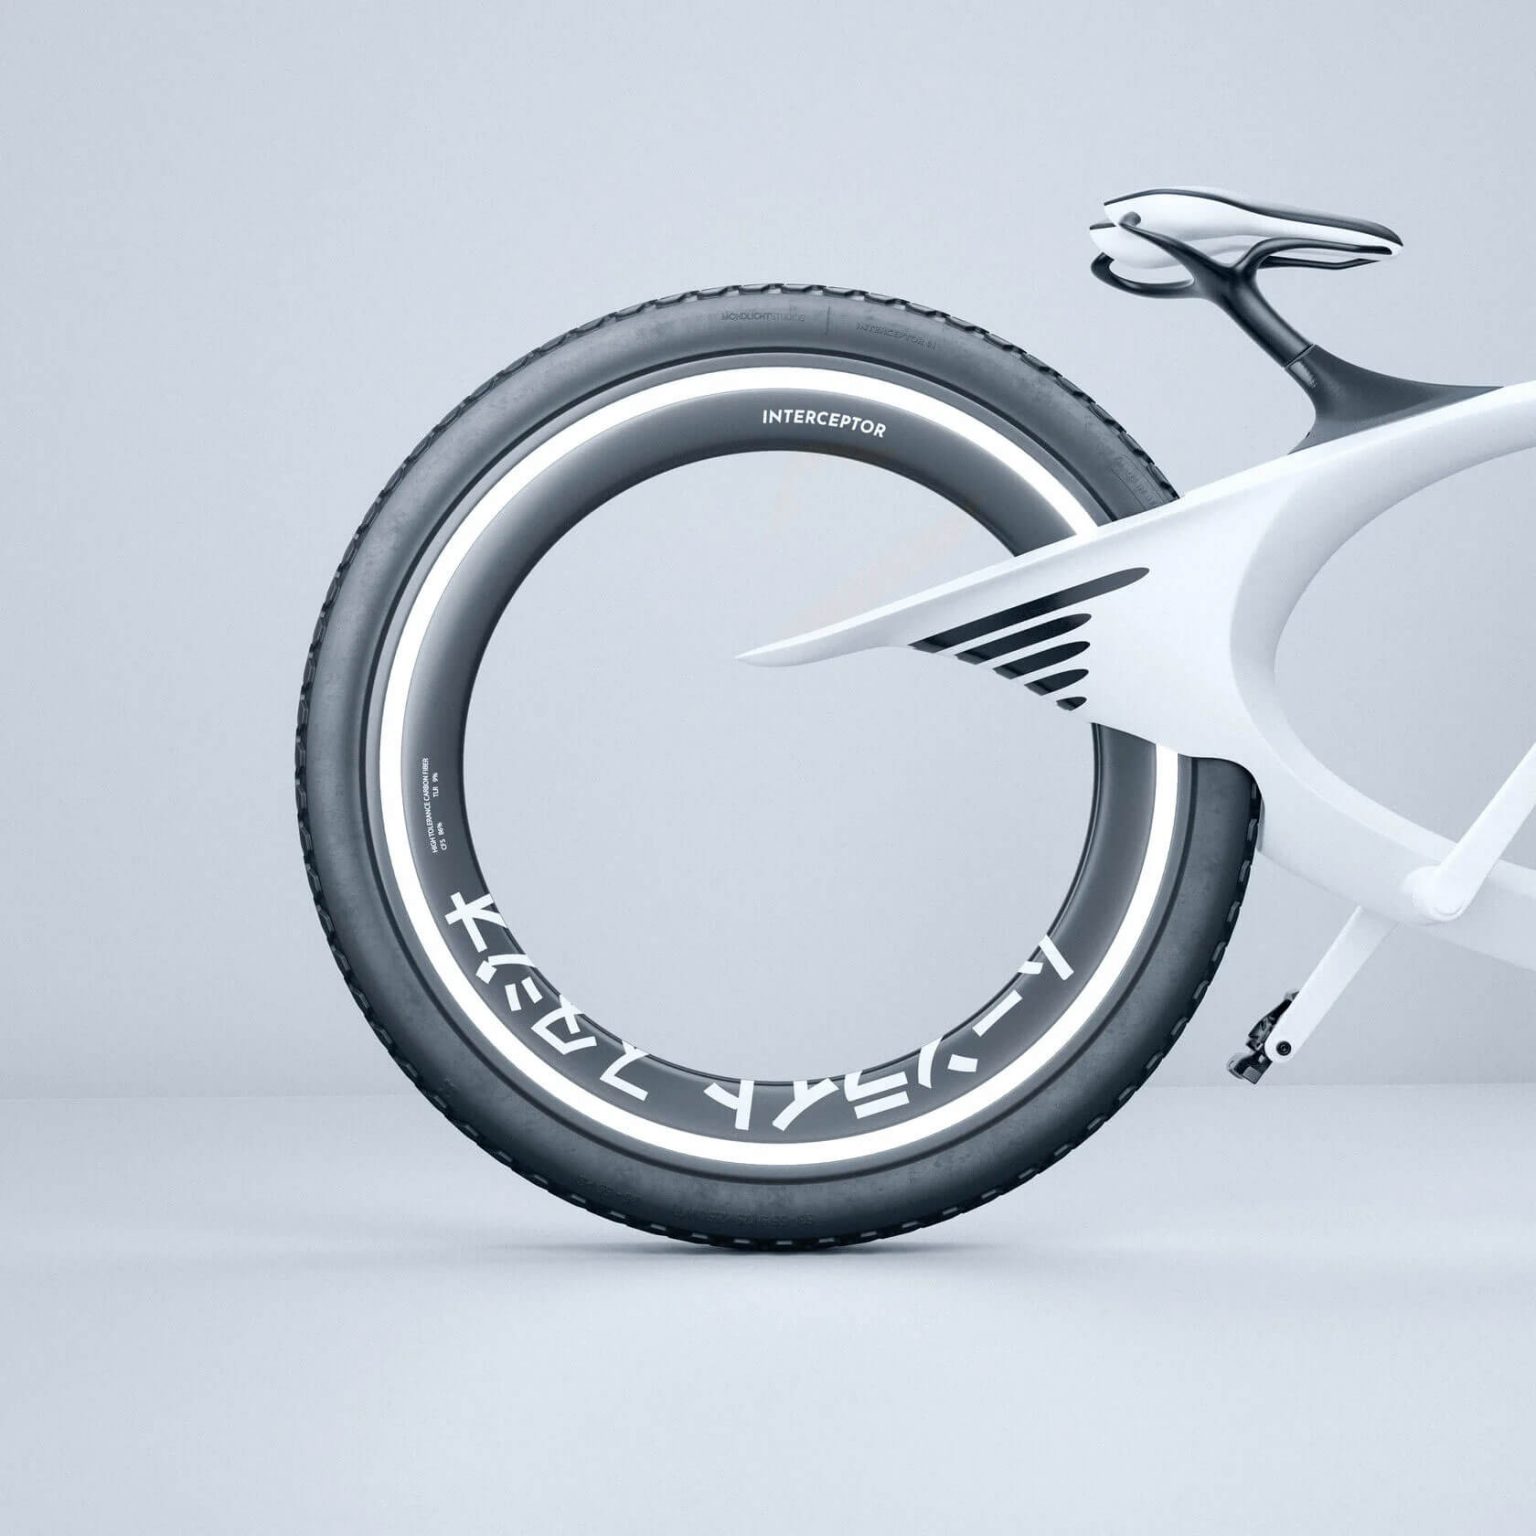 Mondlicht未来自行车概念设计 